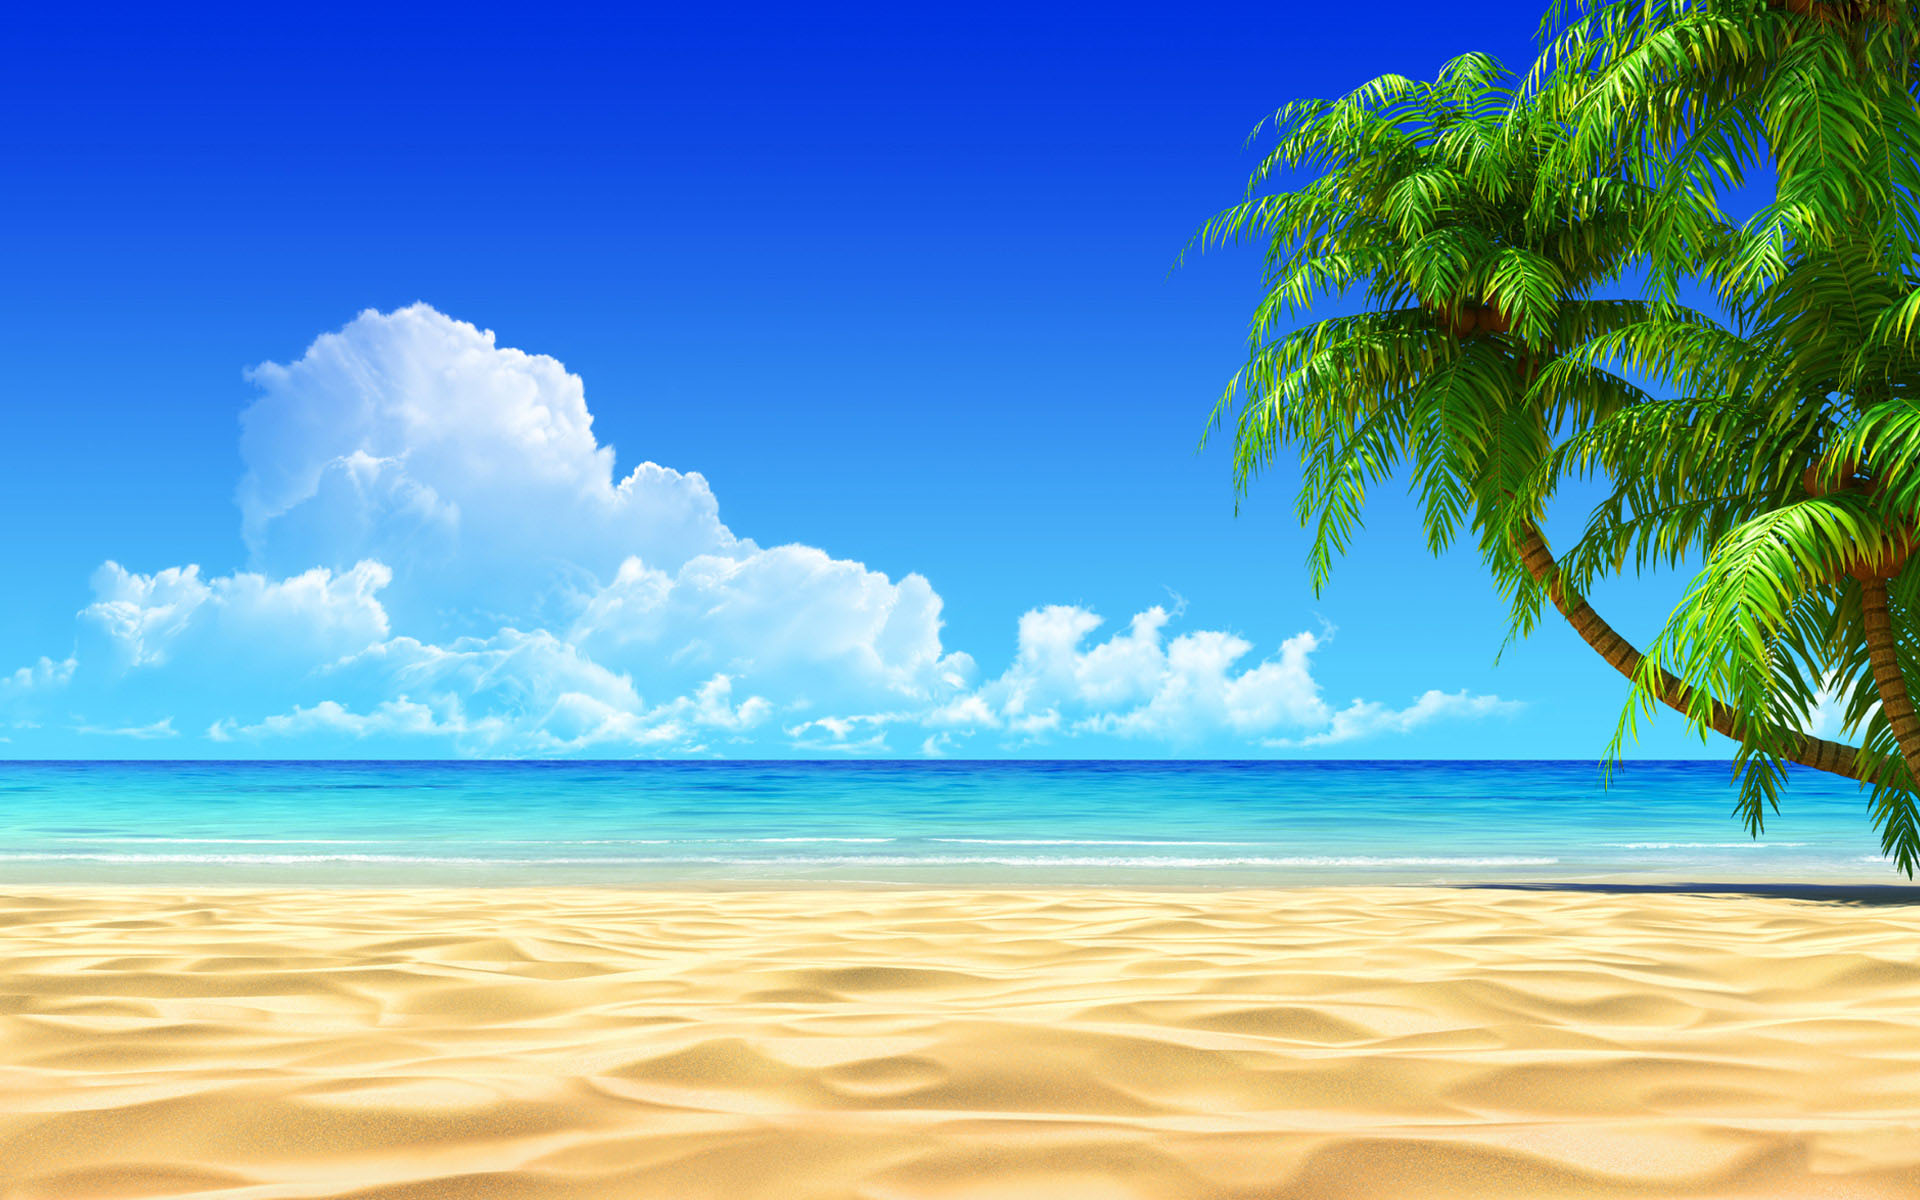 Nếu bạn muốn tìm một hình nền có độ phân giải cao để tối ưu hiển thị trên màn hình của mình, thì hãy tải xuống hình nền Ngày yên bình tại bãi biển này. Với độ phân giải 1920x1200, bạn sẽ được tận hưởng một bức ảnh rực rỡ và tươi sáng trên màn hình của mình.